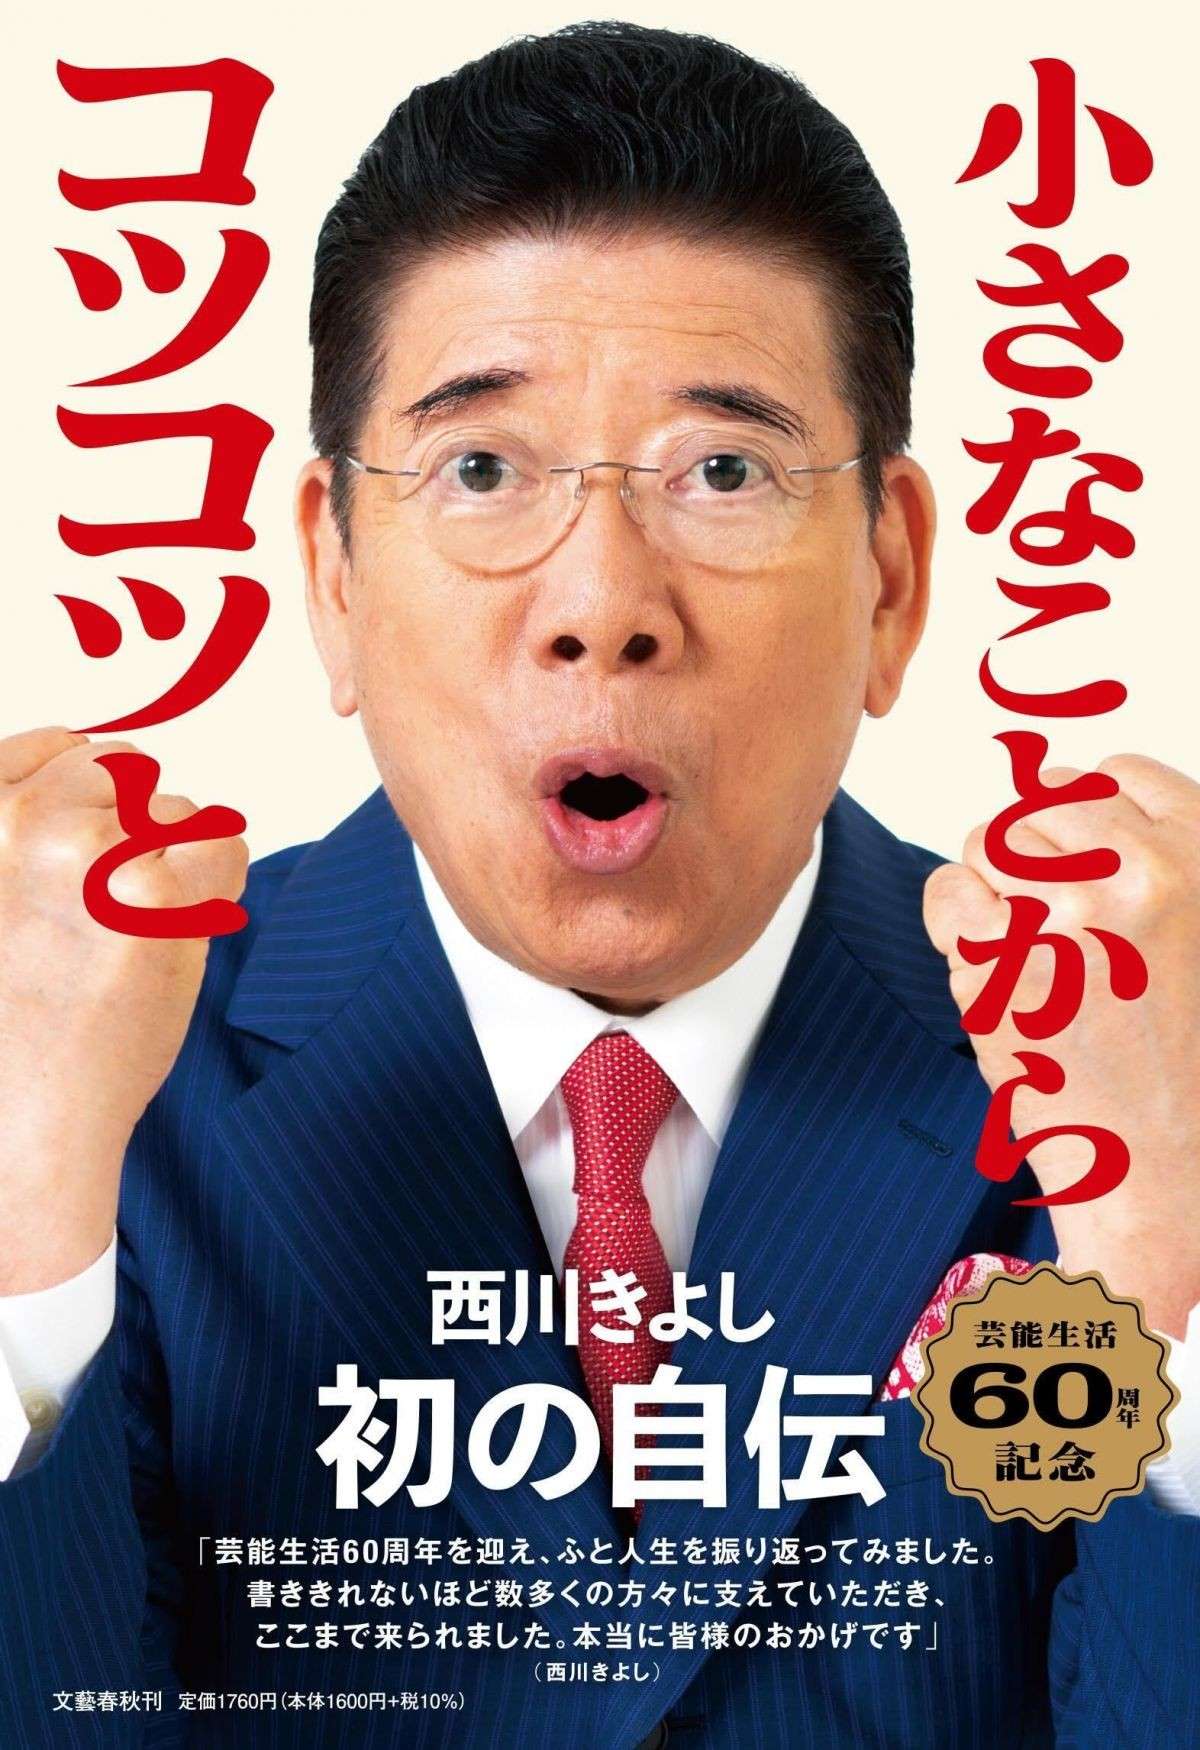 芸歴60年を迎える西川きよしさん。父の倒産、結婚、コンビ解散危機、政界進出...激動の人生を綴る